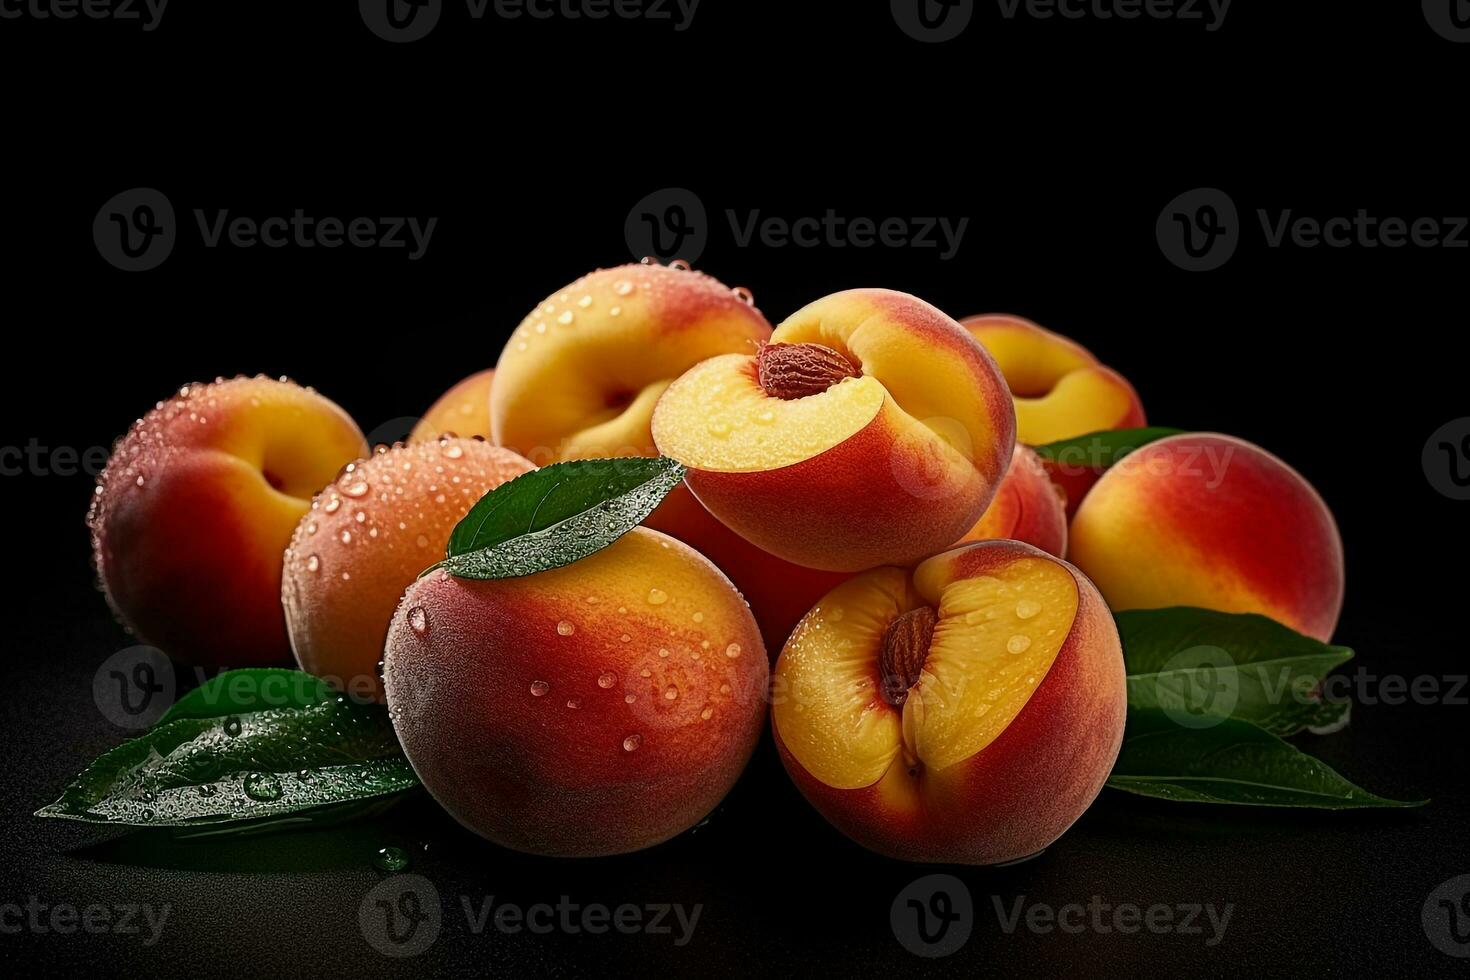 färsk persikor på Färg bakgrund foto